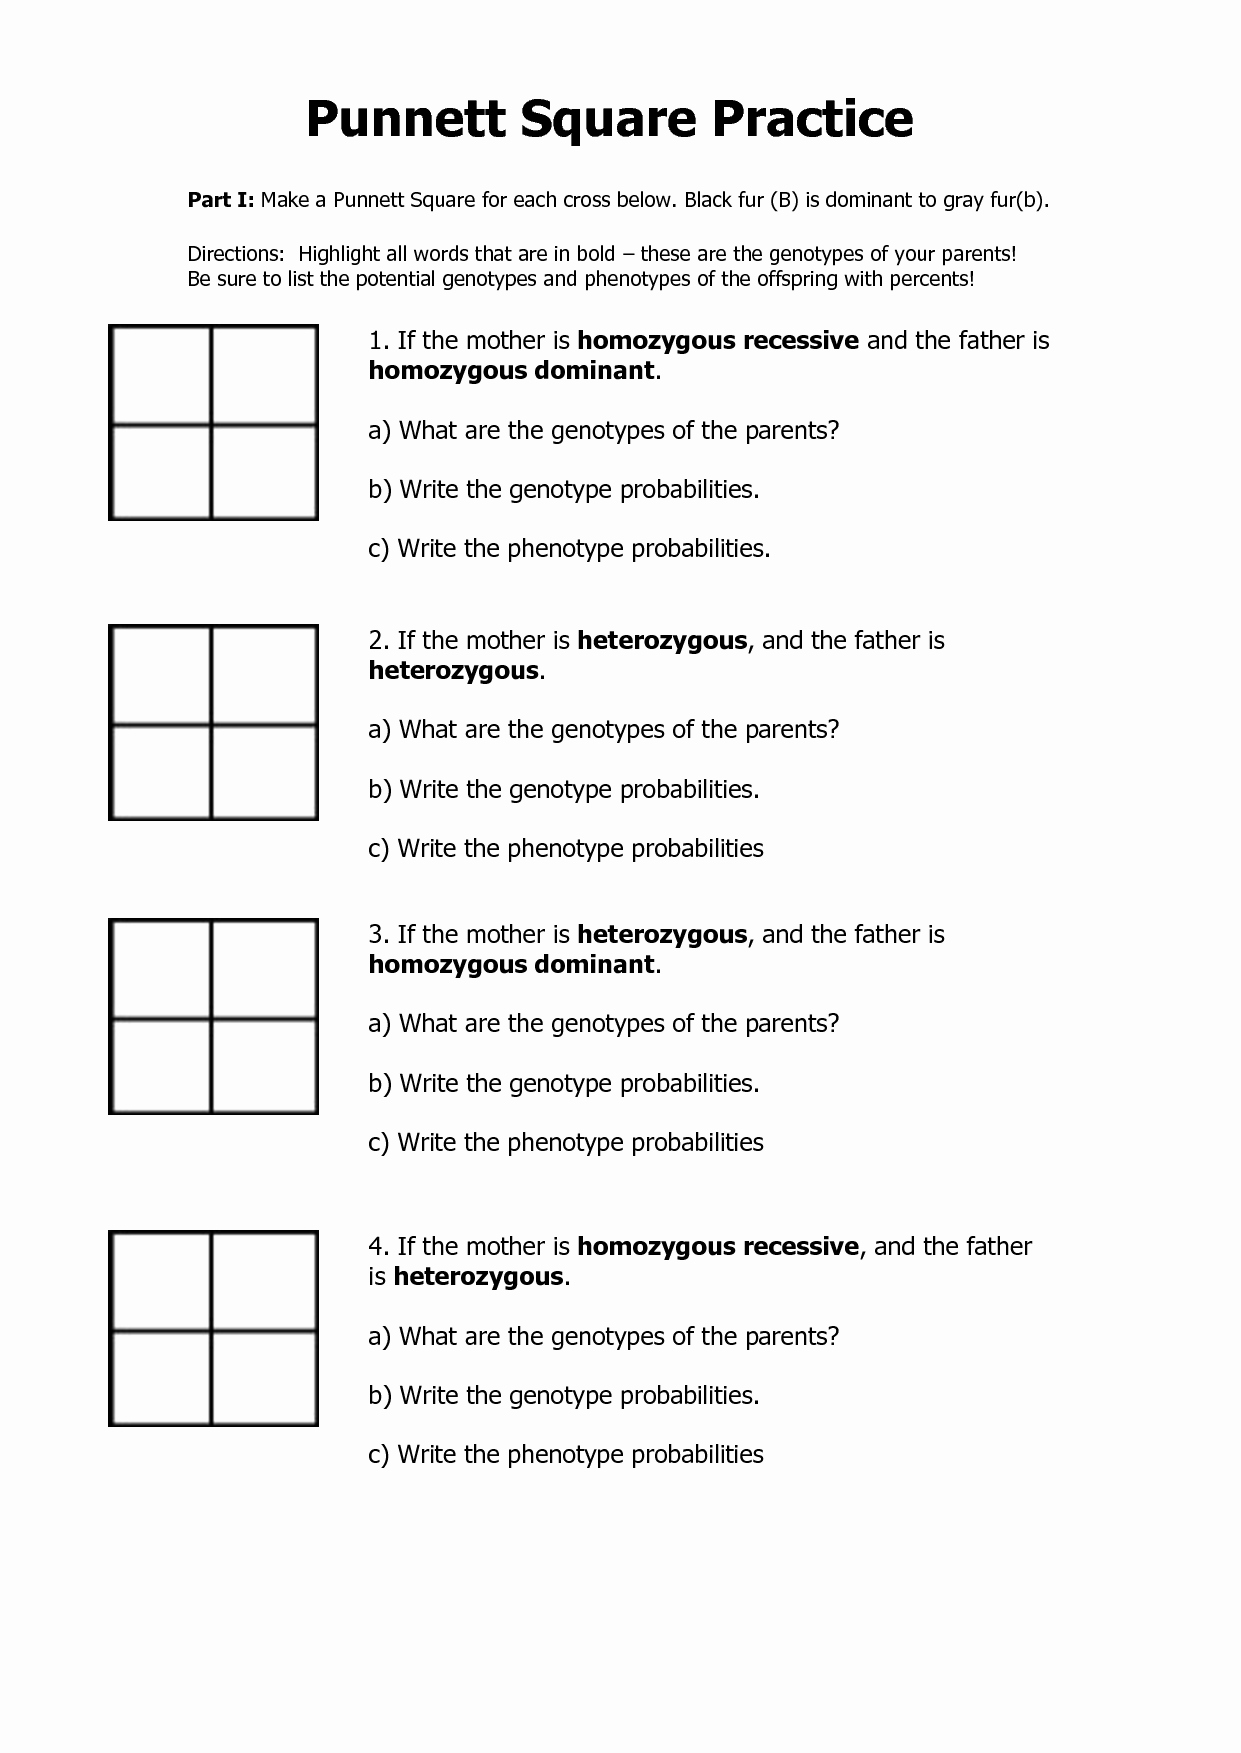 Punnett Square Practice Problems Worksheet Lovely 49 Punnett Square Practice Worksheet Worked Punnett